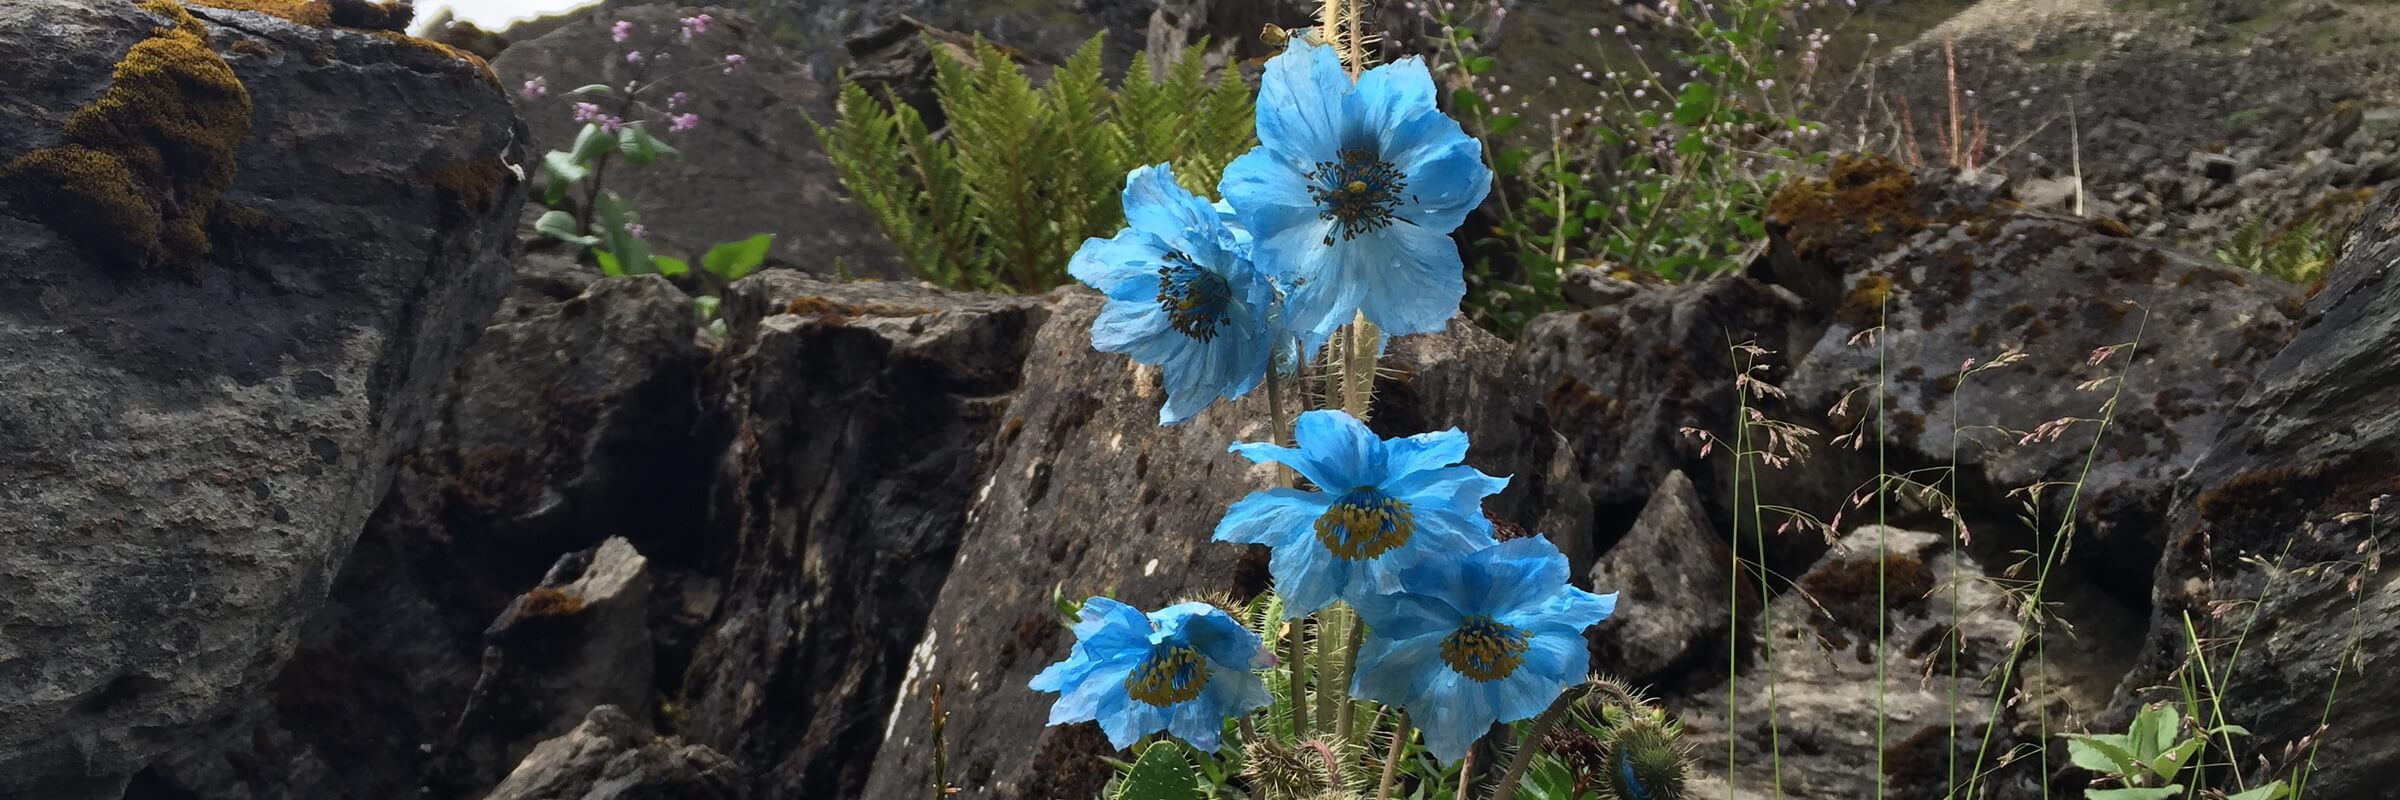 Der blau blühenden Sorten der Pflanzengattung Scheinmohn werden auch „Blauer Mohn“ genannt, diese kommen vor allem im Himalaya sehr häufig vor.